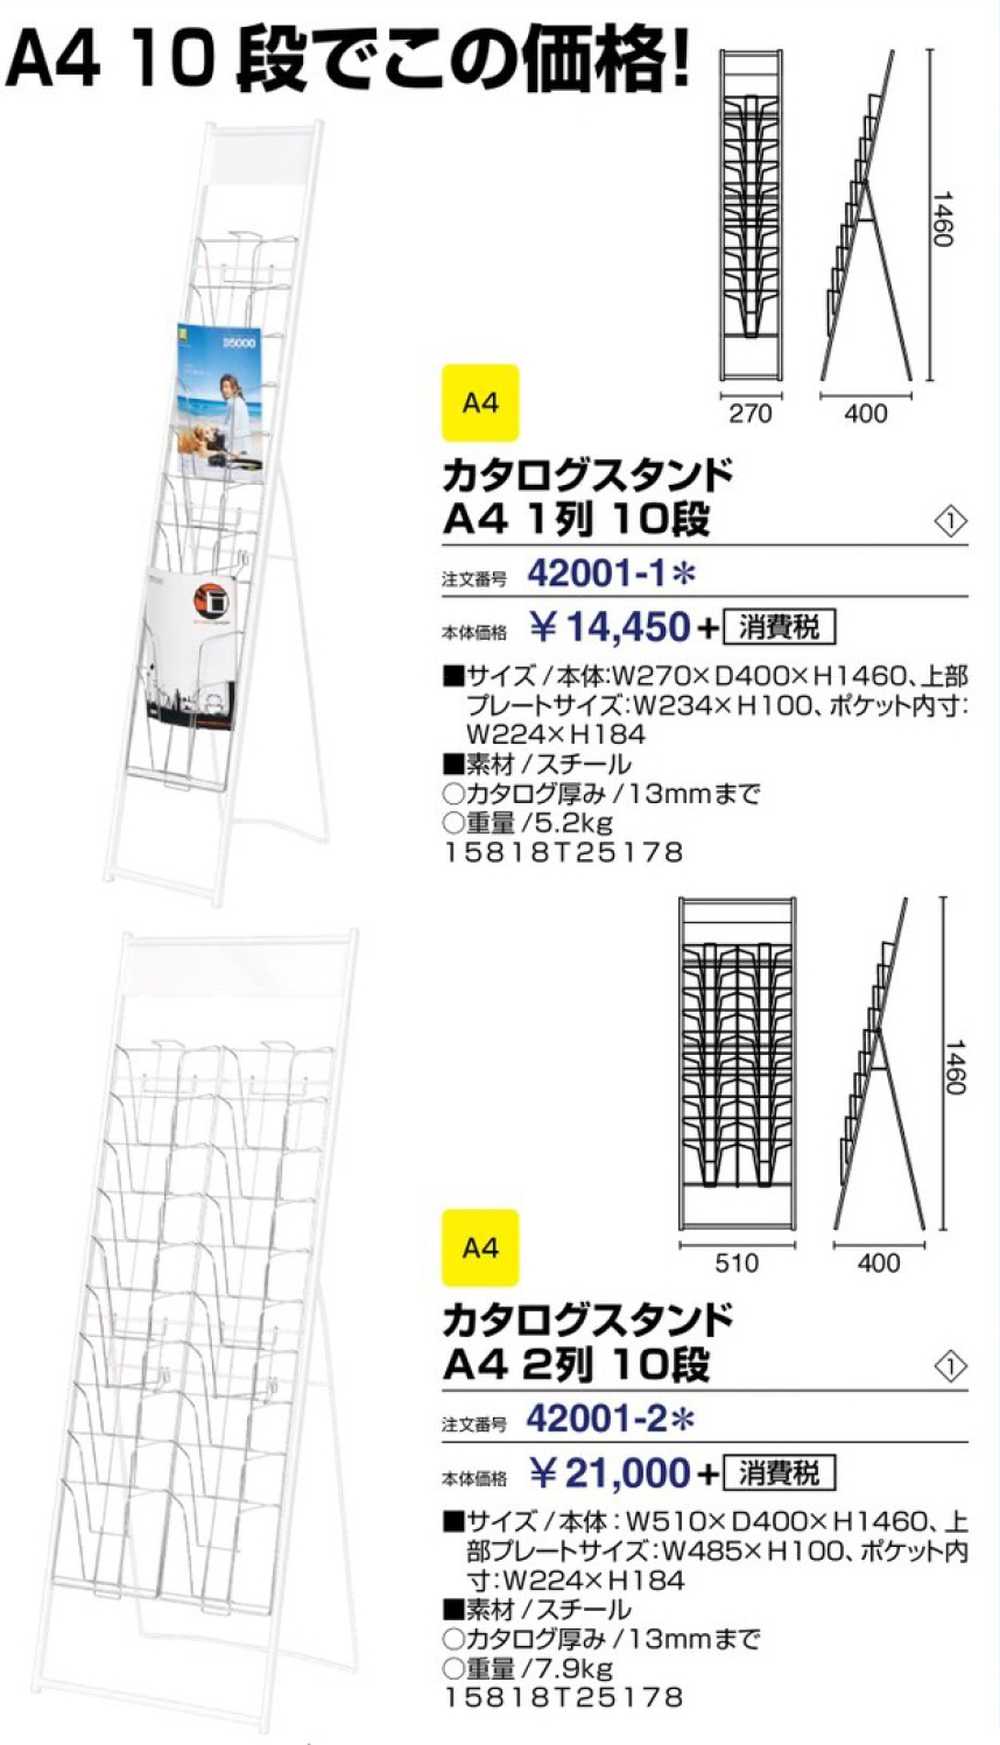 イワサキ パンフレットスタンド 2列10段 A4サイズ TZR-PSN220LG 1台(代